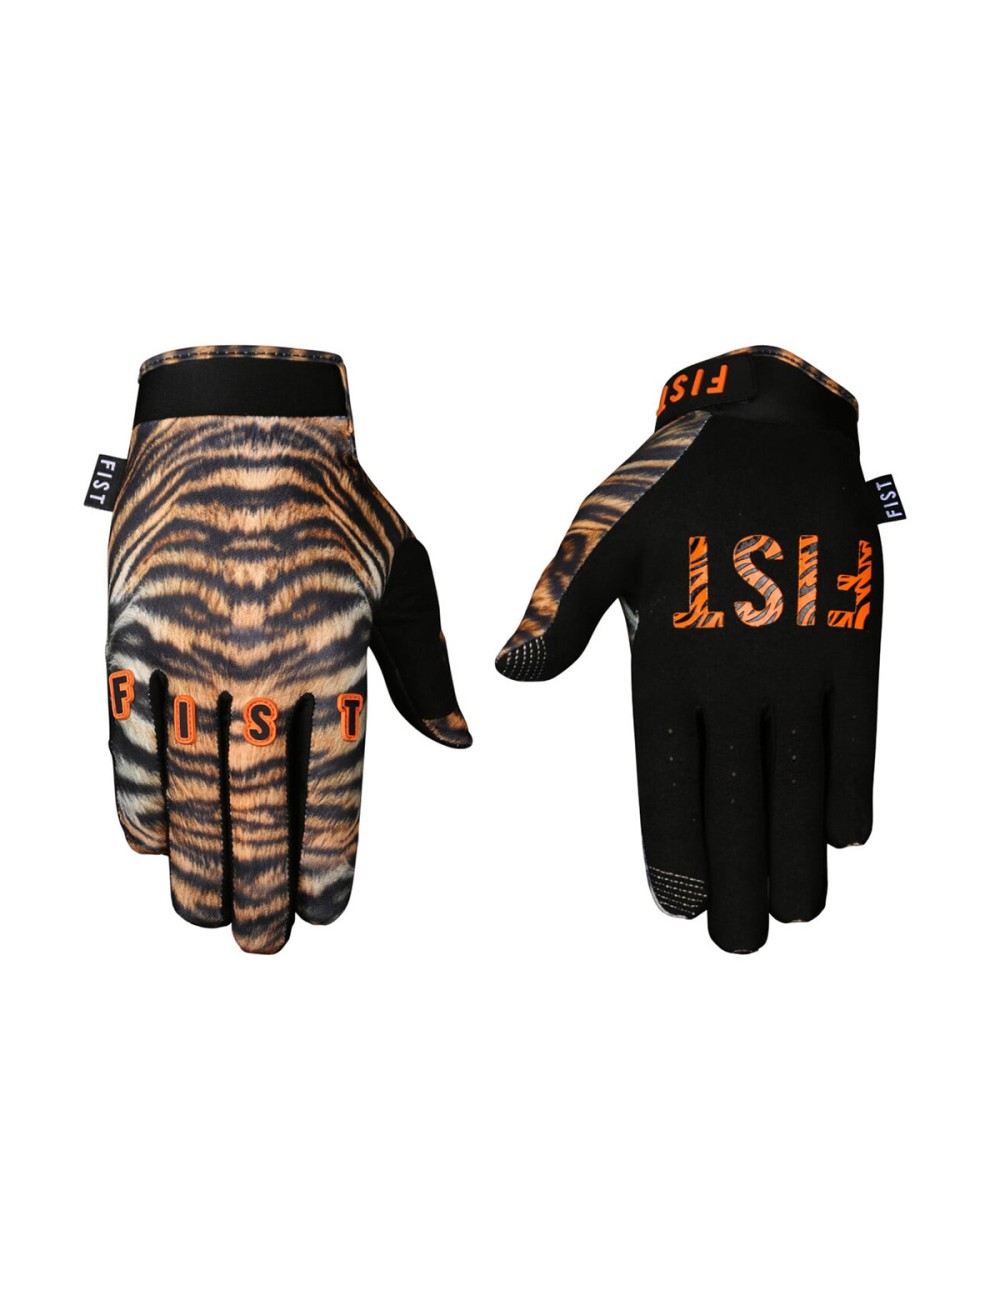 Fist Gloves - Tiger